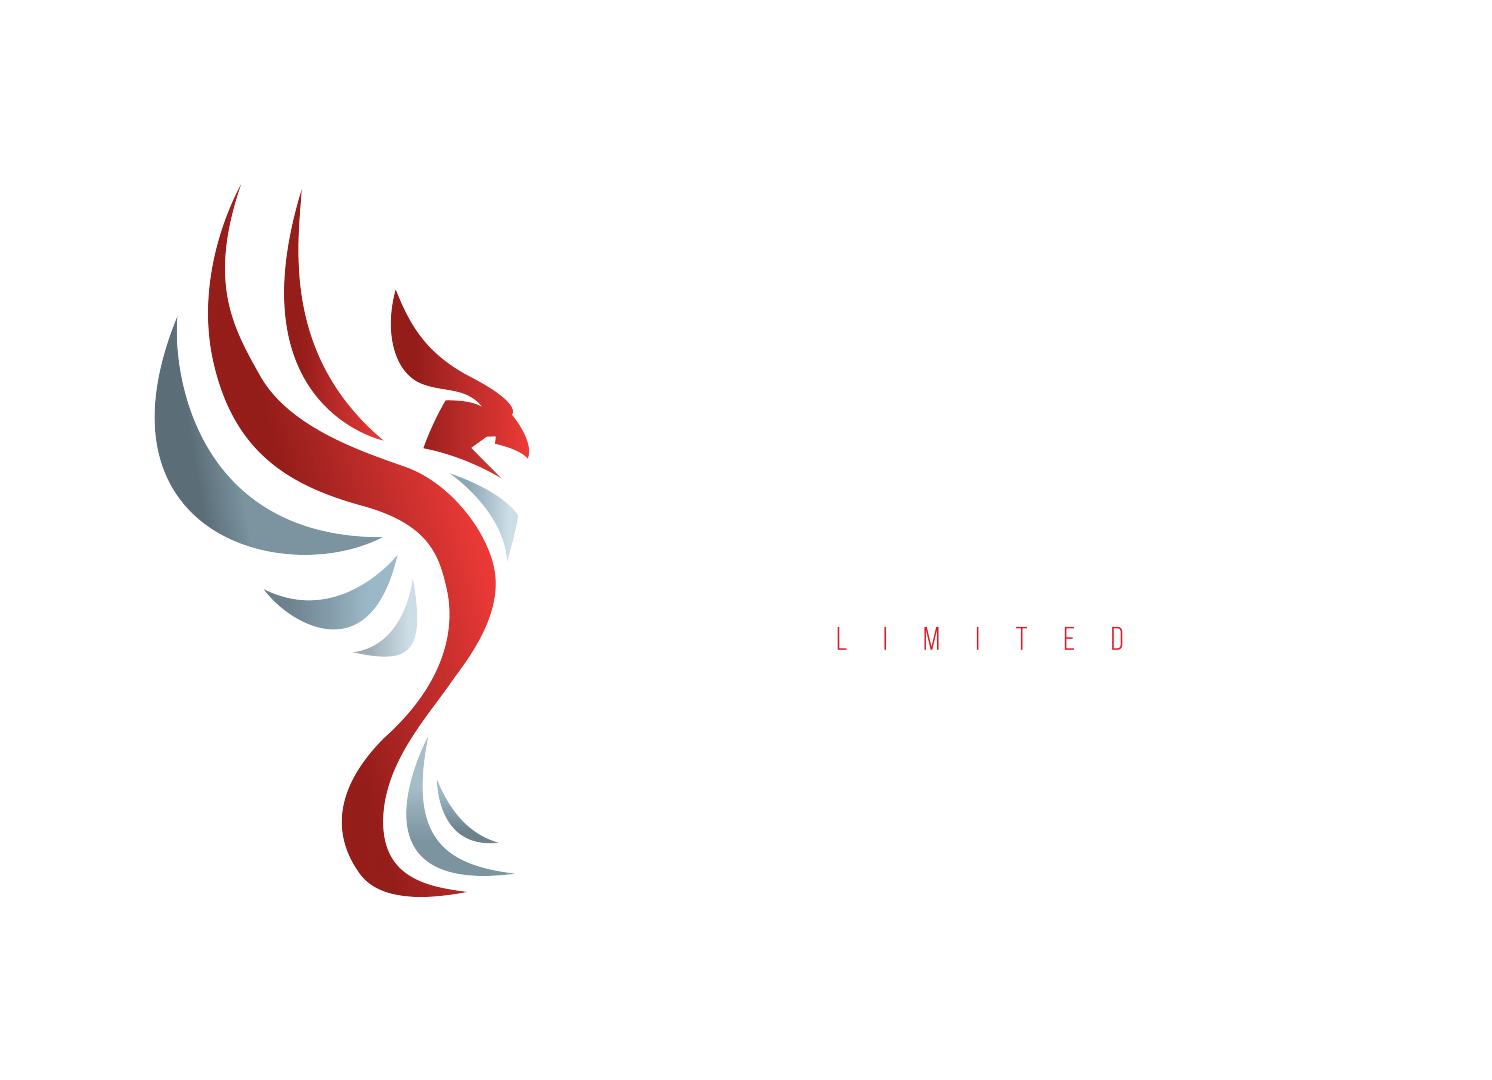 March-elevator-logo